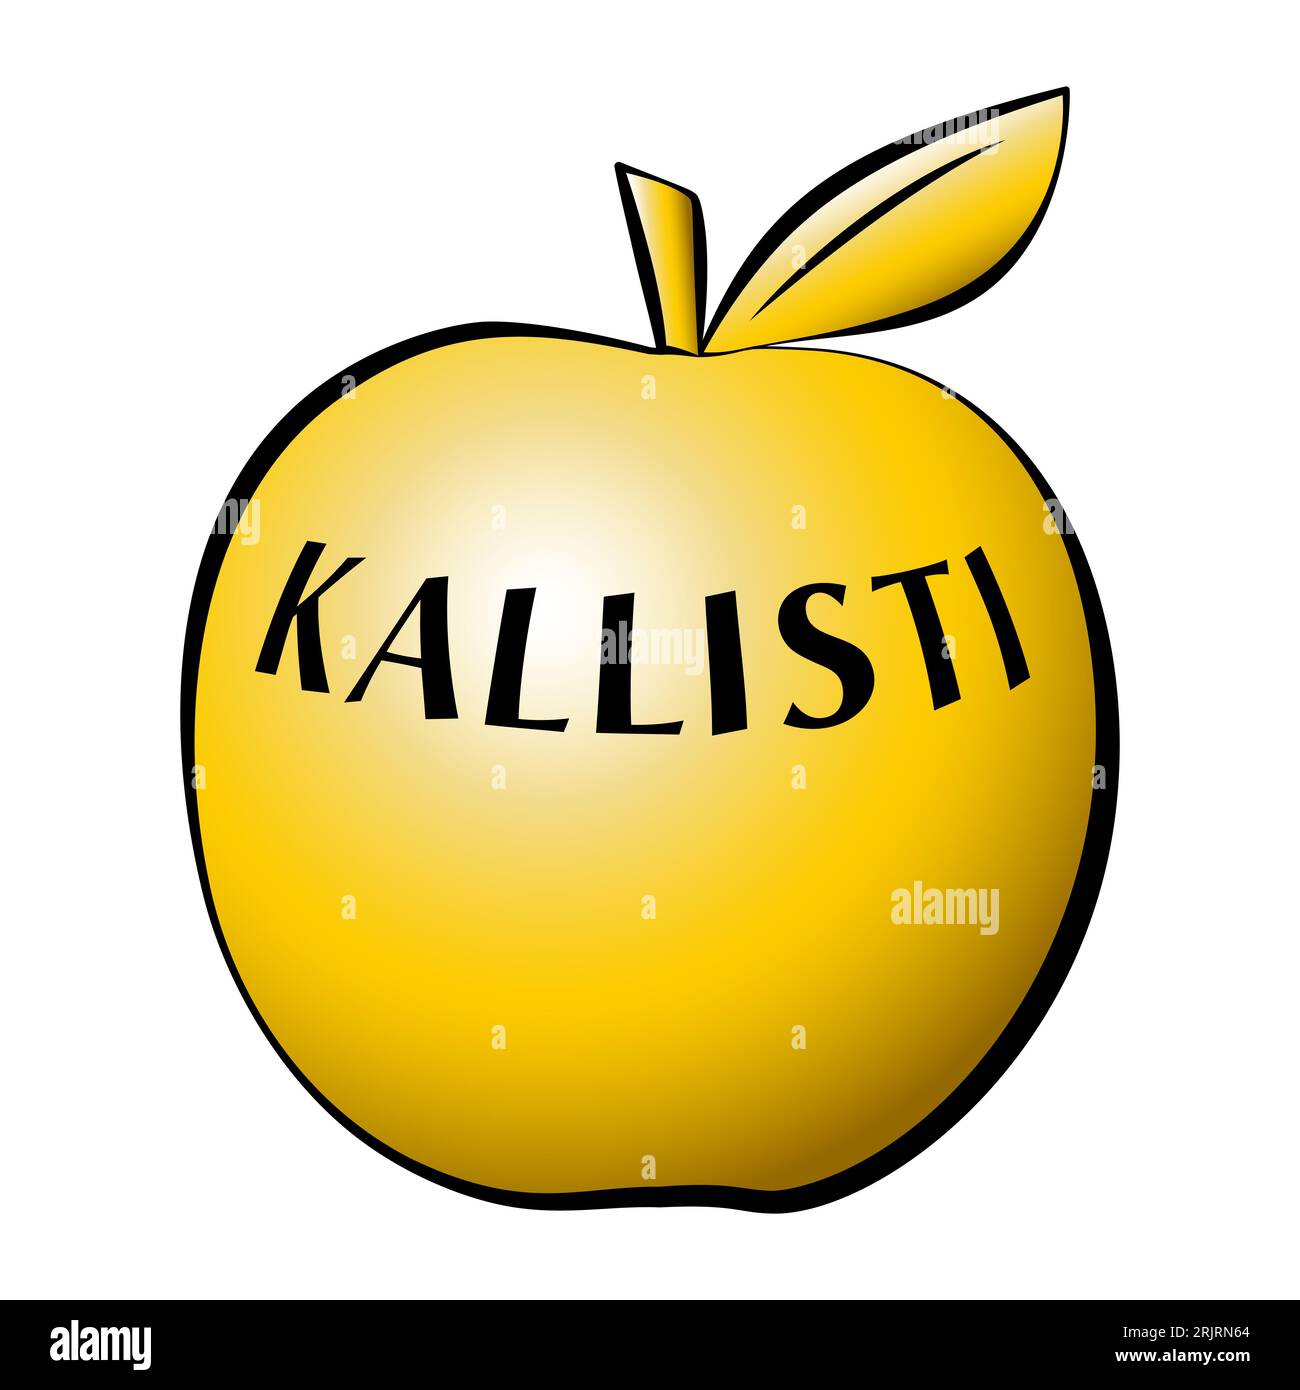 Goldener Apfel der Uneinigkeit, mit der Inschrift KALLISTI (zum schönsten), der von Eris, der griechischen Göttin des Streits, fallen gelassen wurde und einen von Eitelkeit angeheizten Streit auslöste. Stockfoto